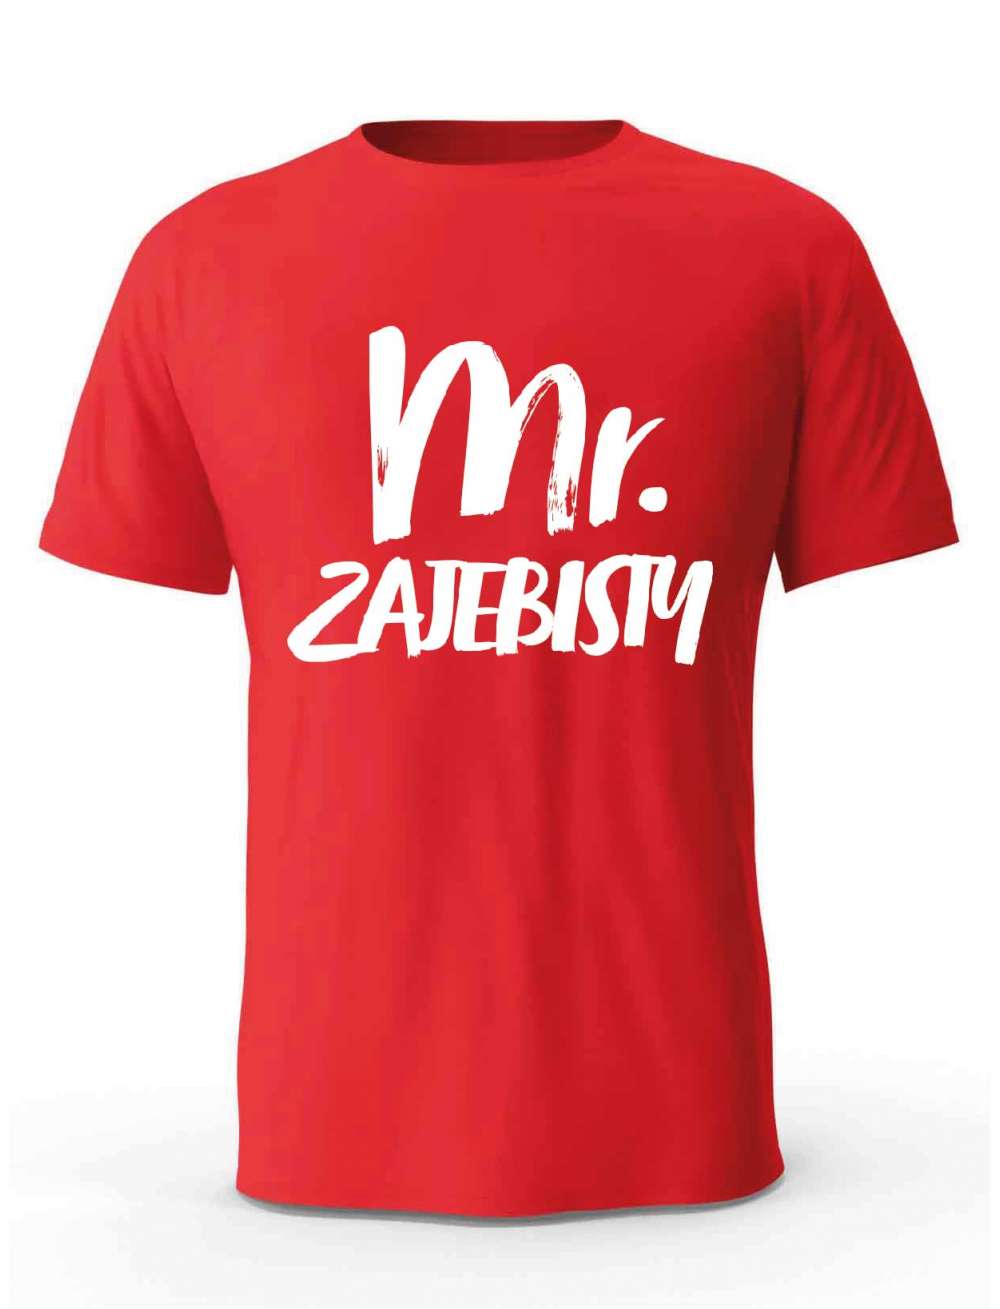 Koszulka Męska, Mr. Zajebisty, Prezent Dla Mężczyzny